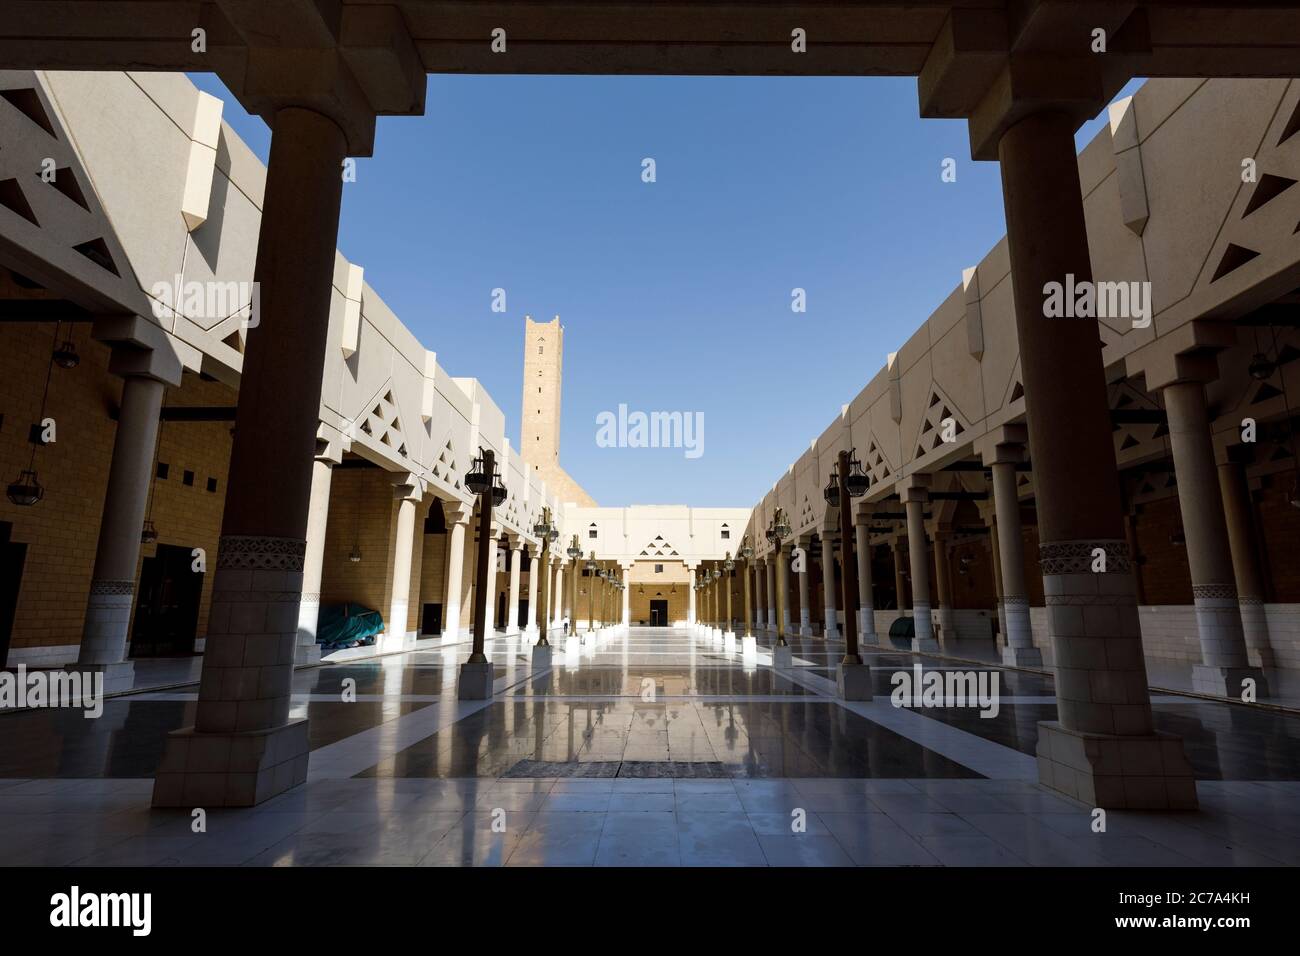 Imam Turki bin Abdullah Moschee in der Nähe des Dira Platzes in der Innenstadt von Riad im Königreich Saudi-Arabien Stockfoto